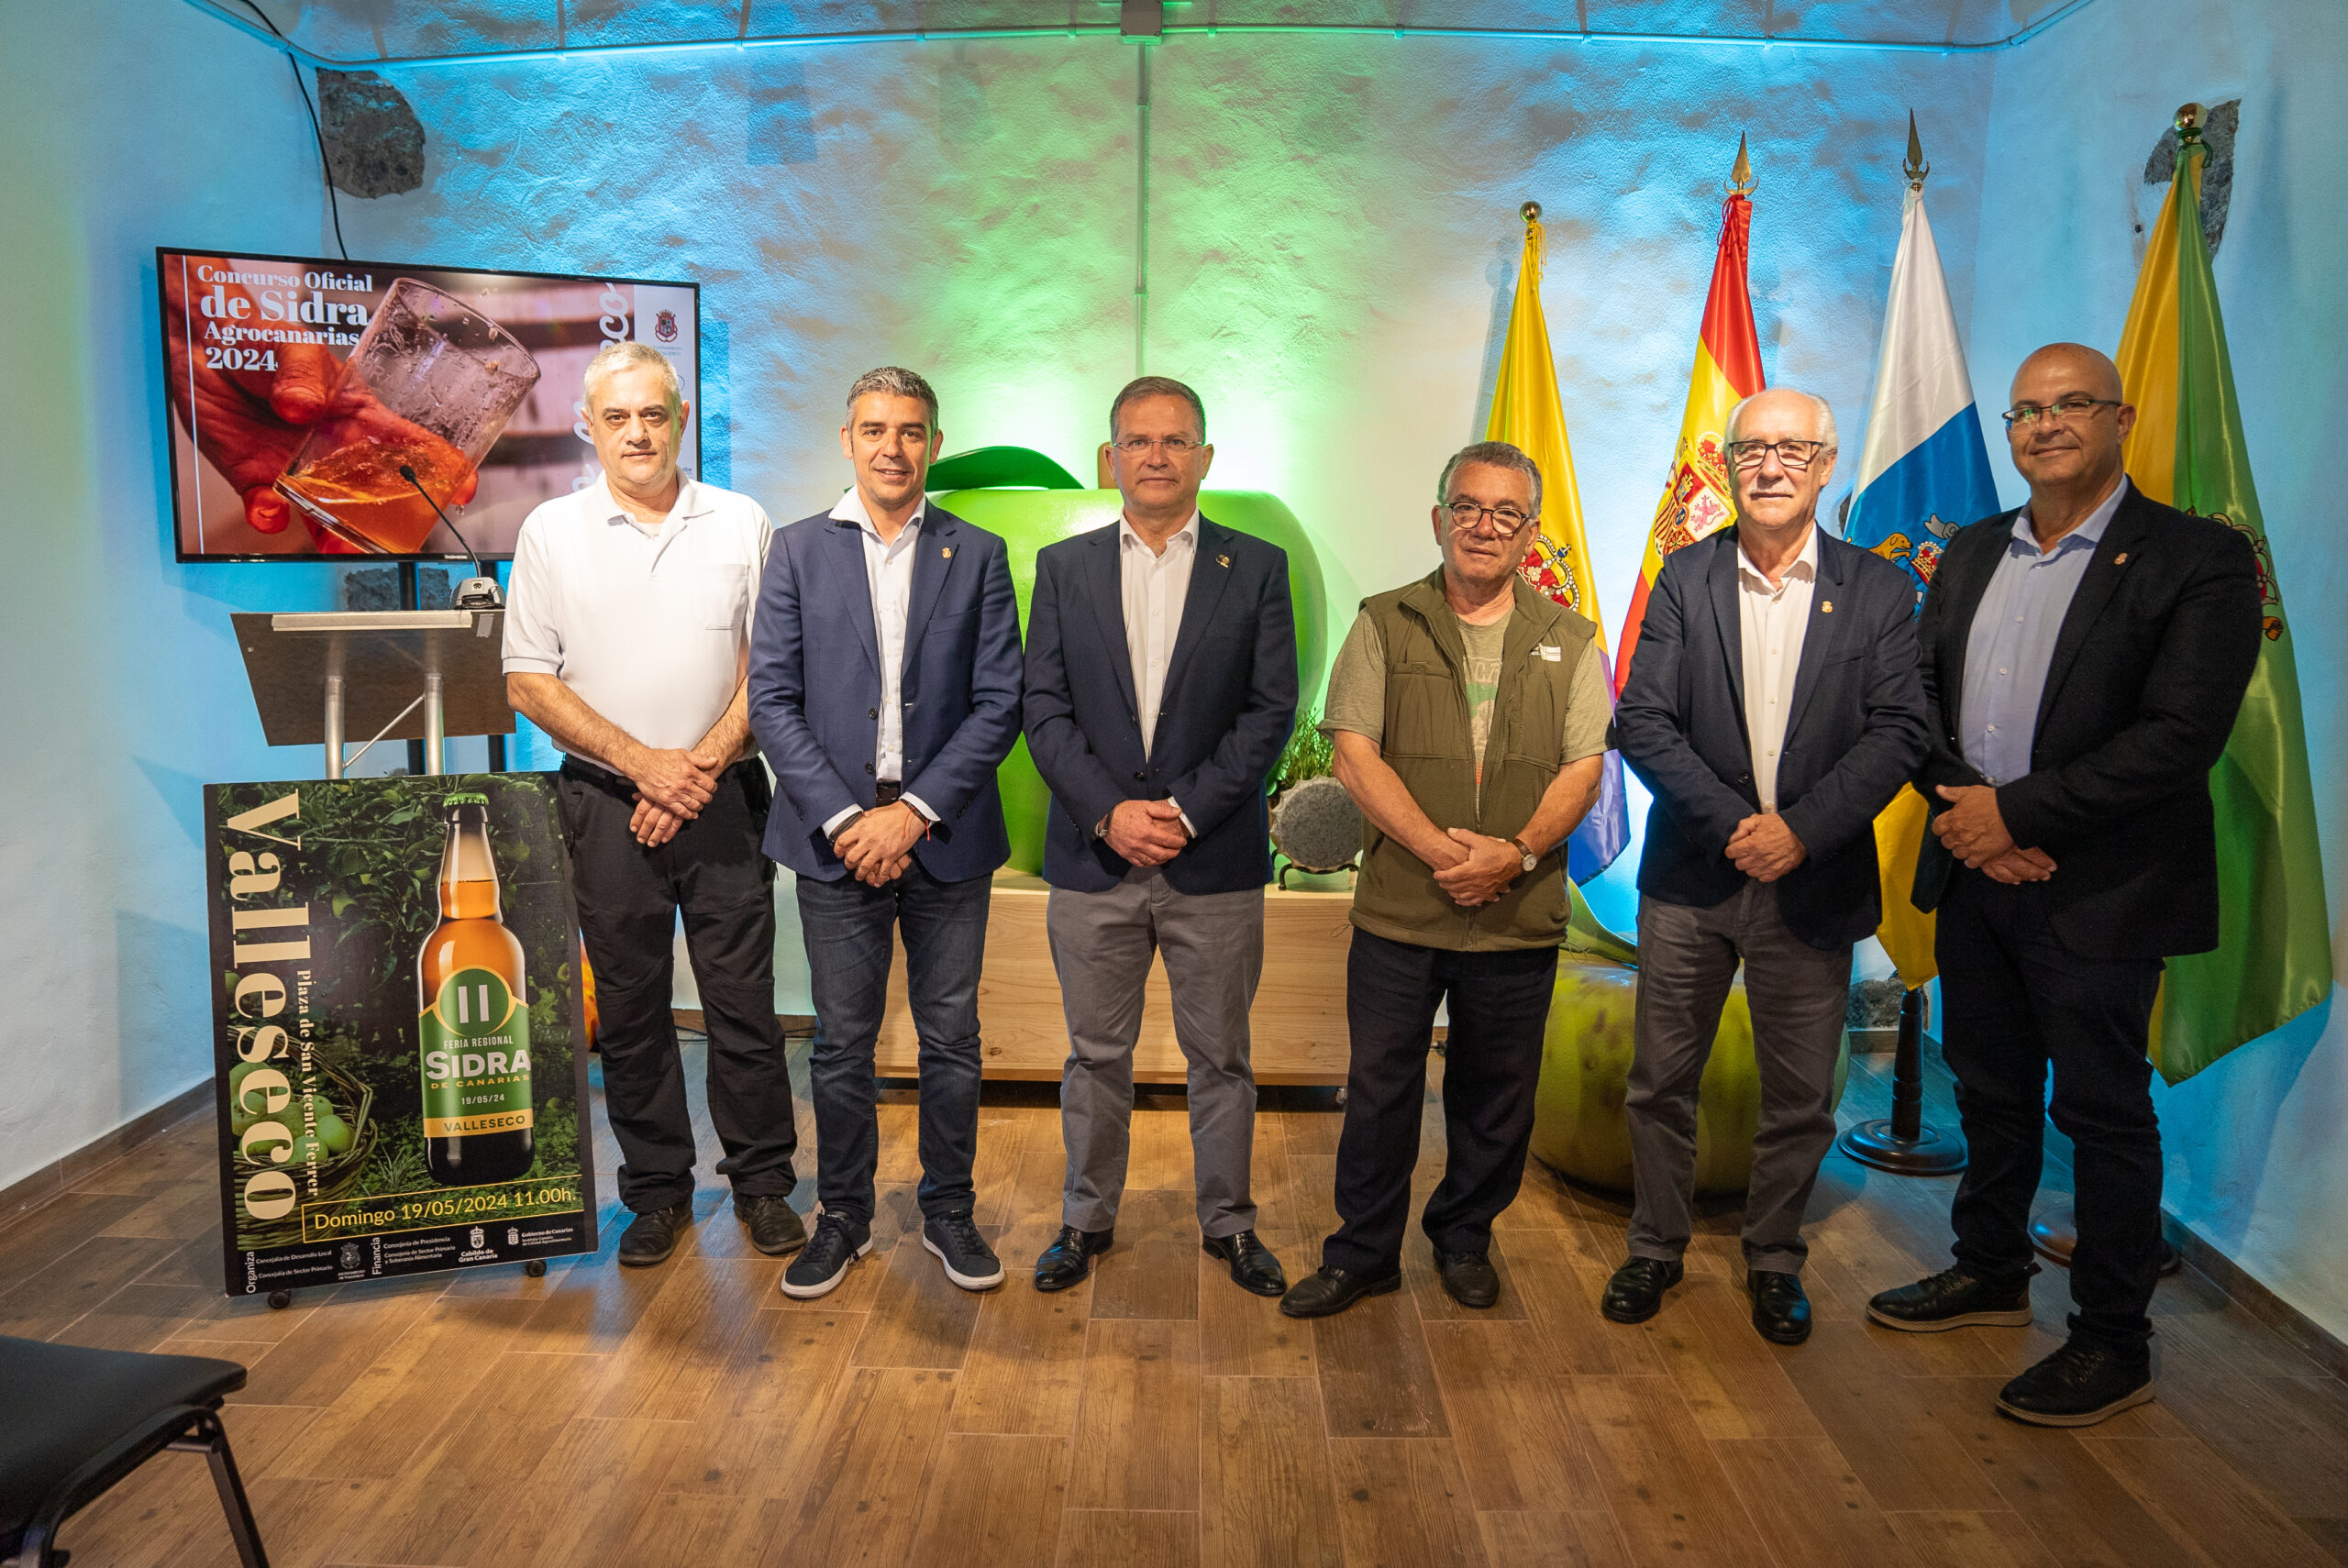 El Gobierno de Canarias y el Ayuntamiento de Valleseco presentan el I Concurso Oficial de Sidra Agrocanarias